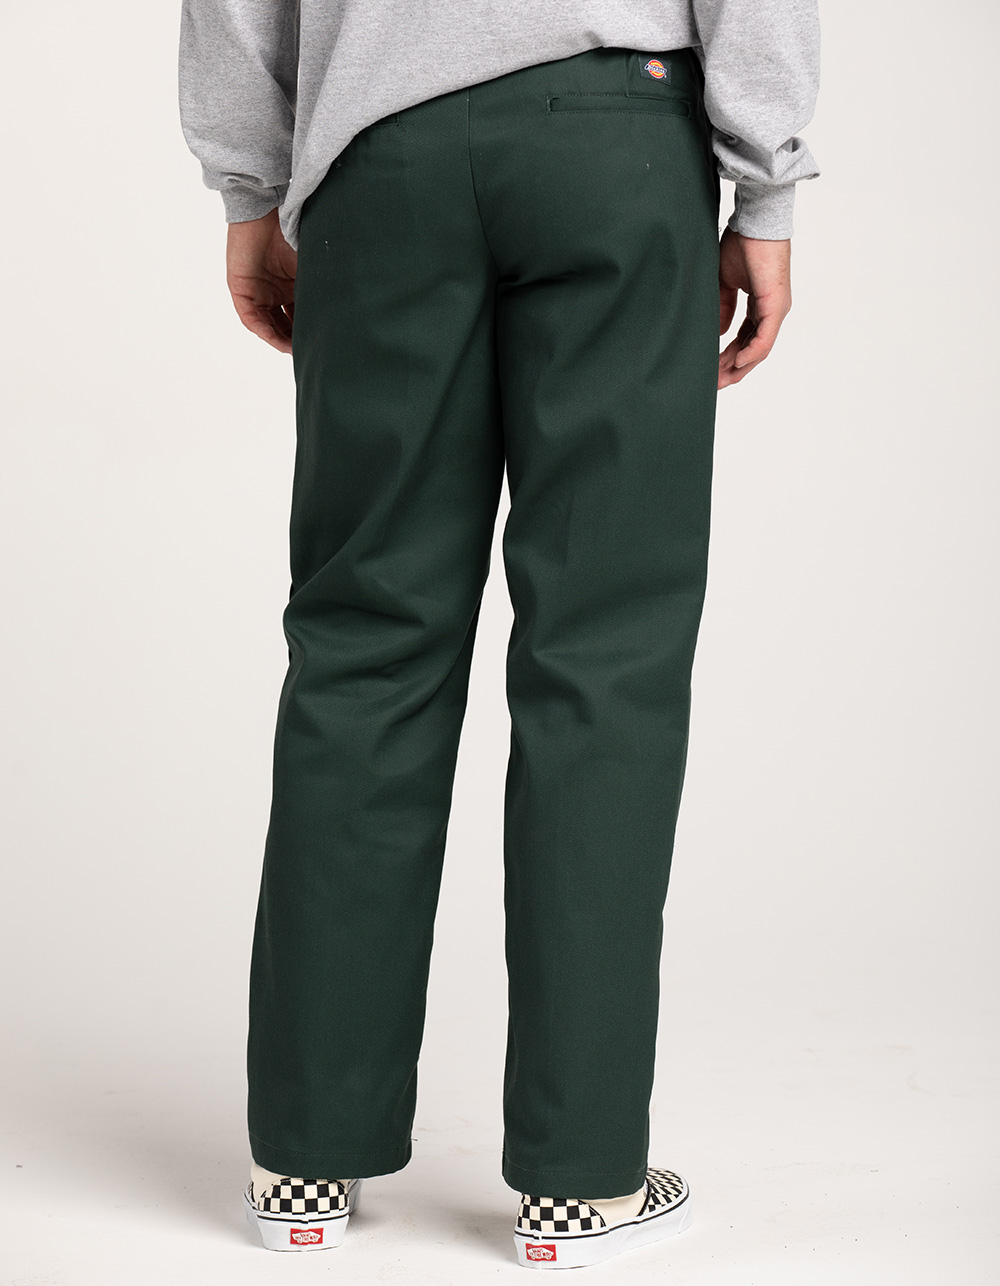 Dickies Men's 874 Original Fit Classic Work Pants White 40X30 